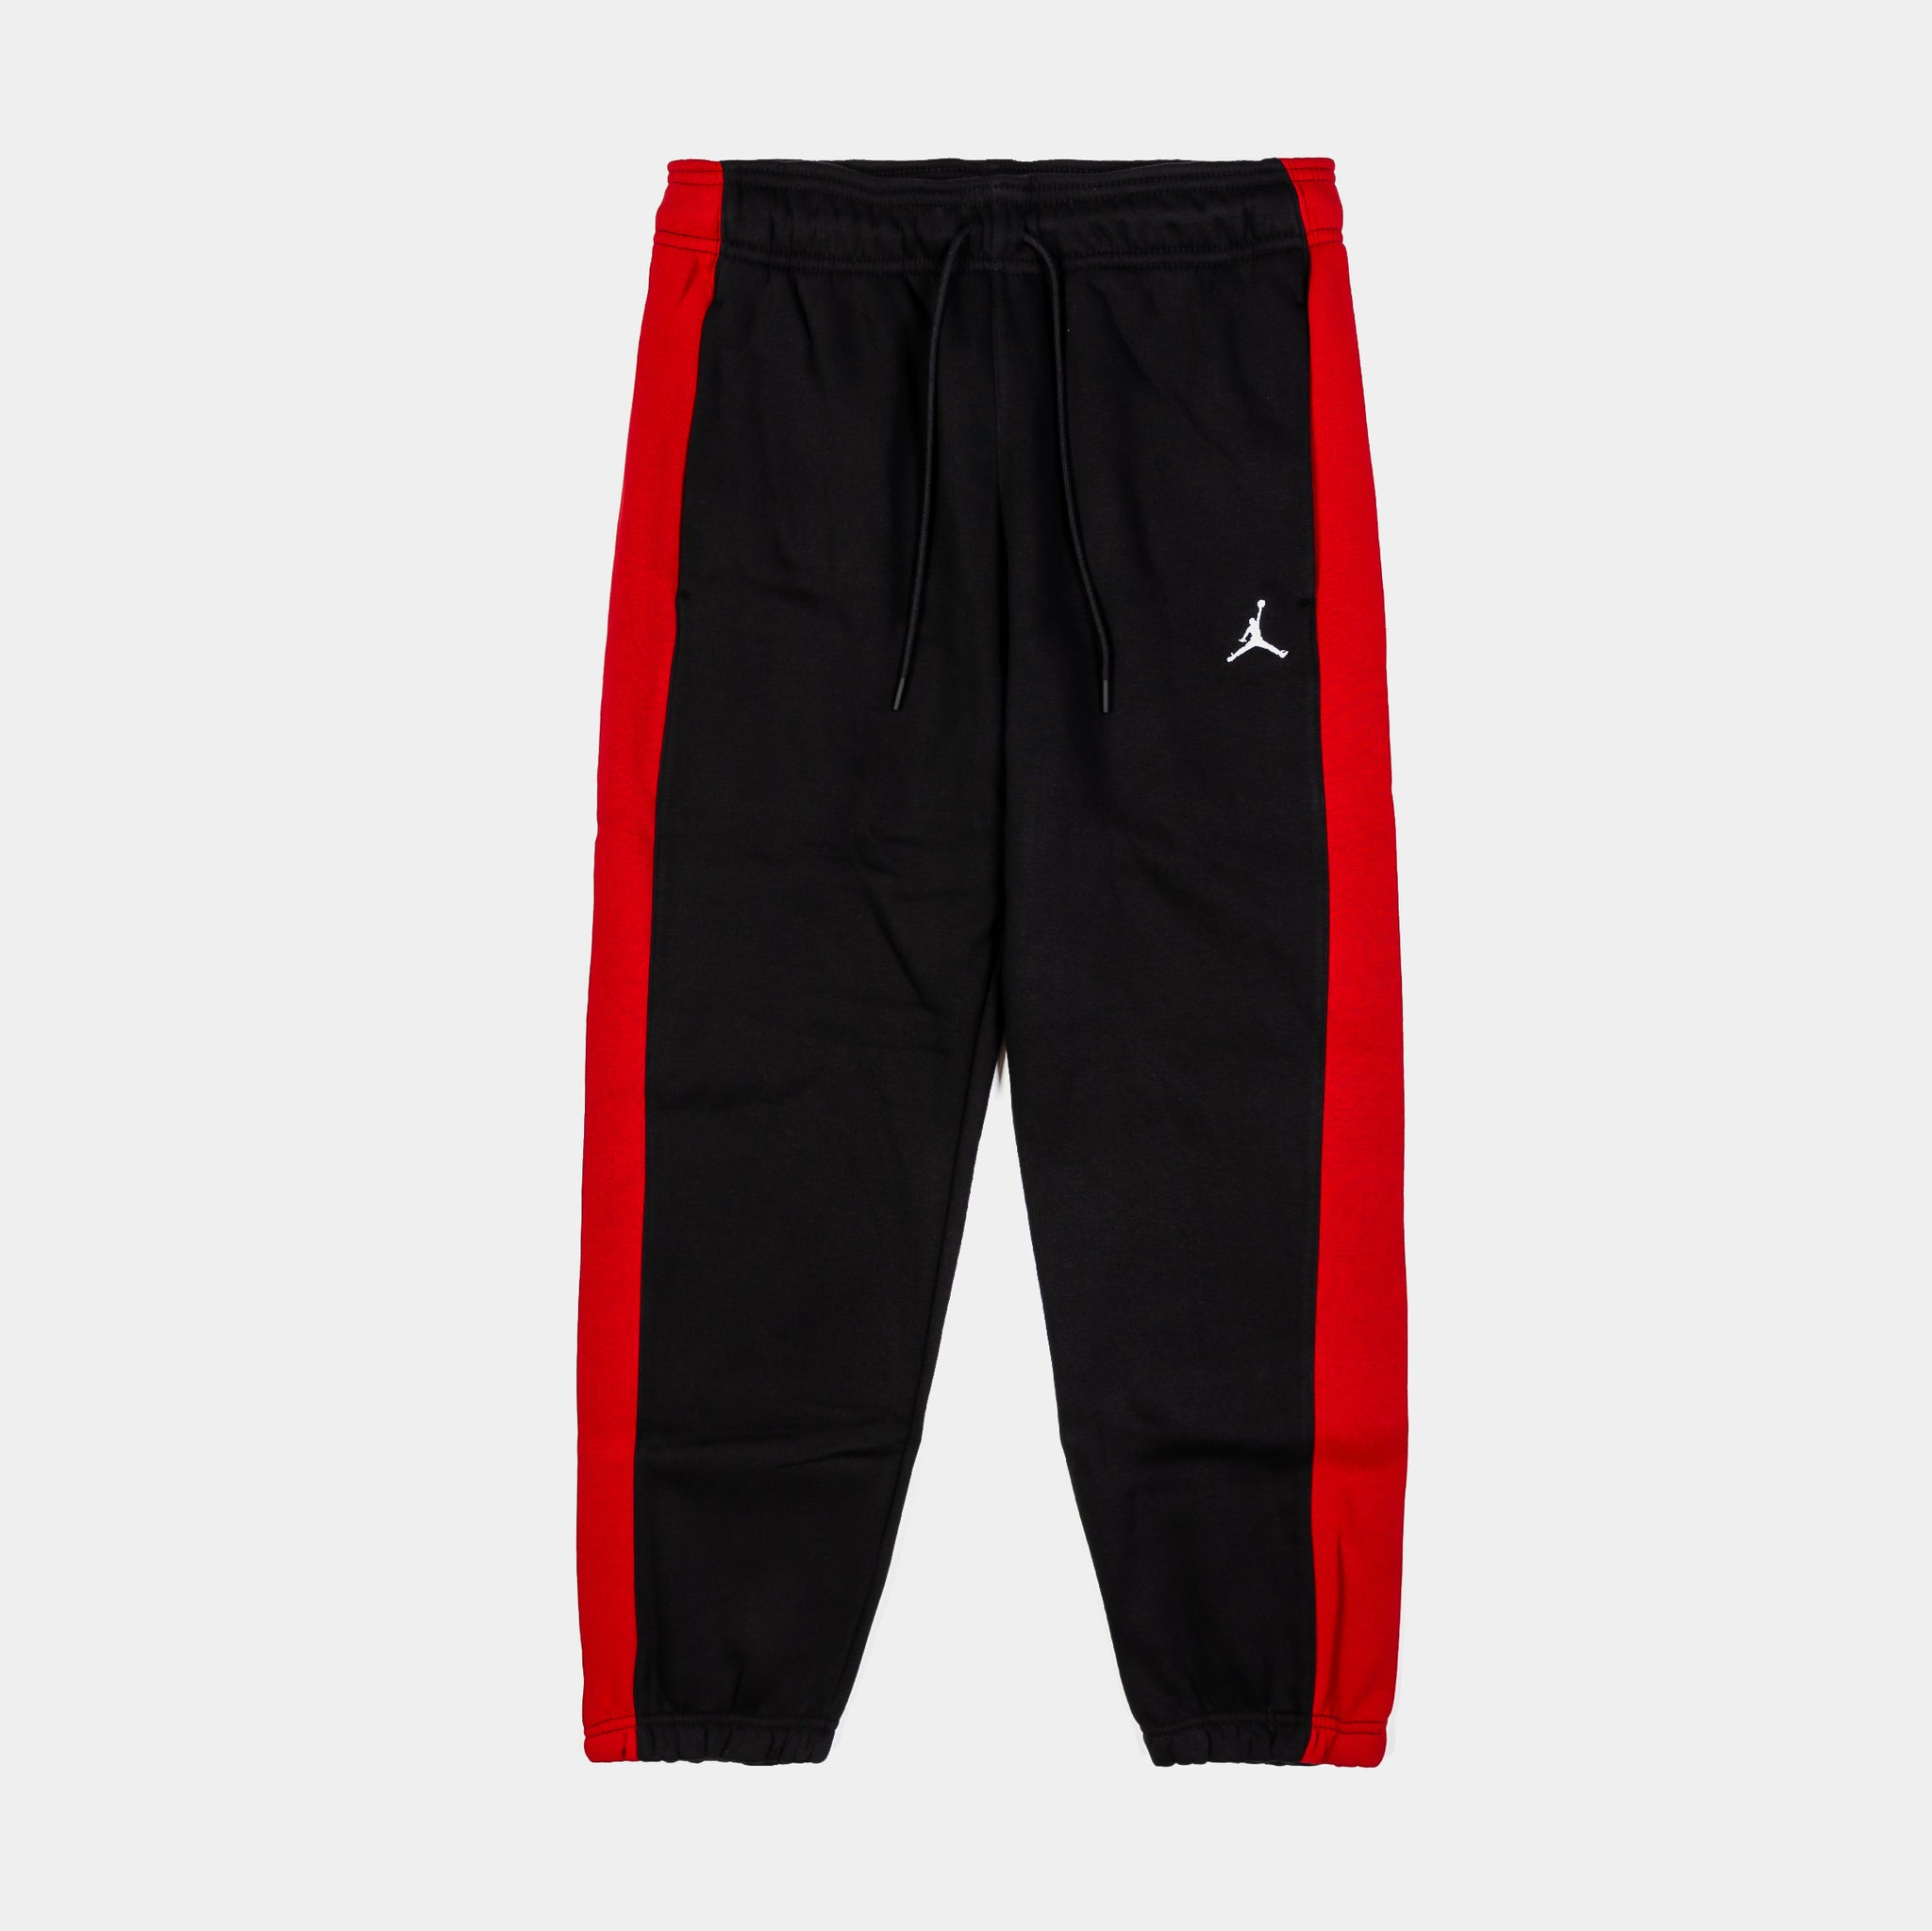 Jordan Brooklyn Fleece Joggers Womens Pants Black Red FB5171-010